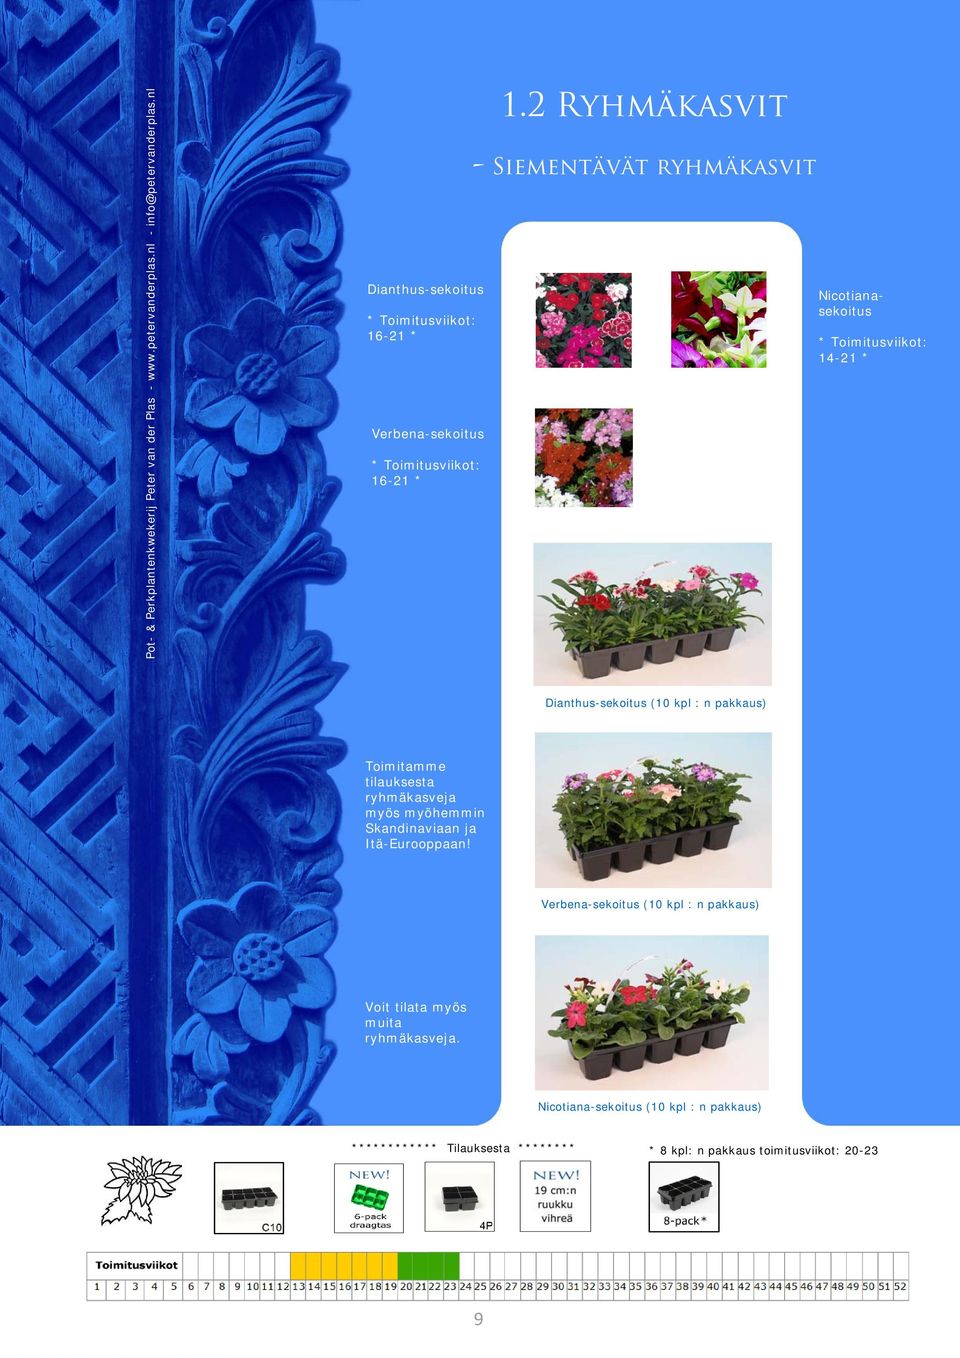 2 Ryhmäkasvit - Siementävät ryhmäkasvit Nicotianasekoitus * Toimitusviikot: 14-21 * Dianthus-sekoitus (10 kpl : n pakkaus) Toimitamme tilauksesta